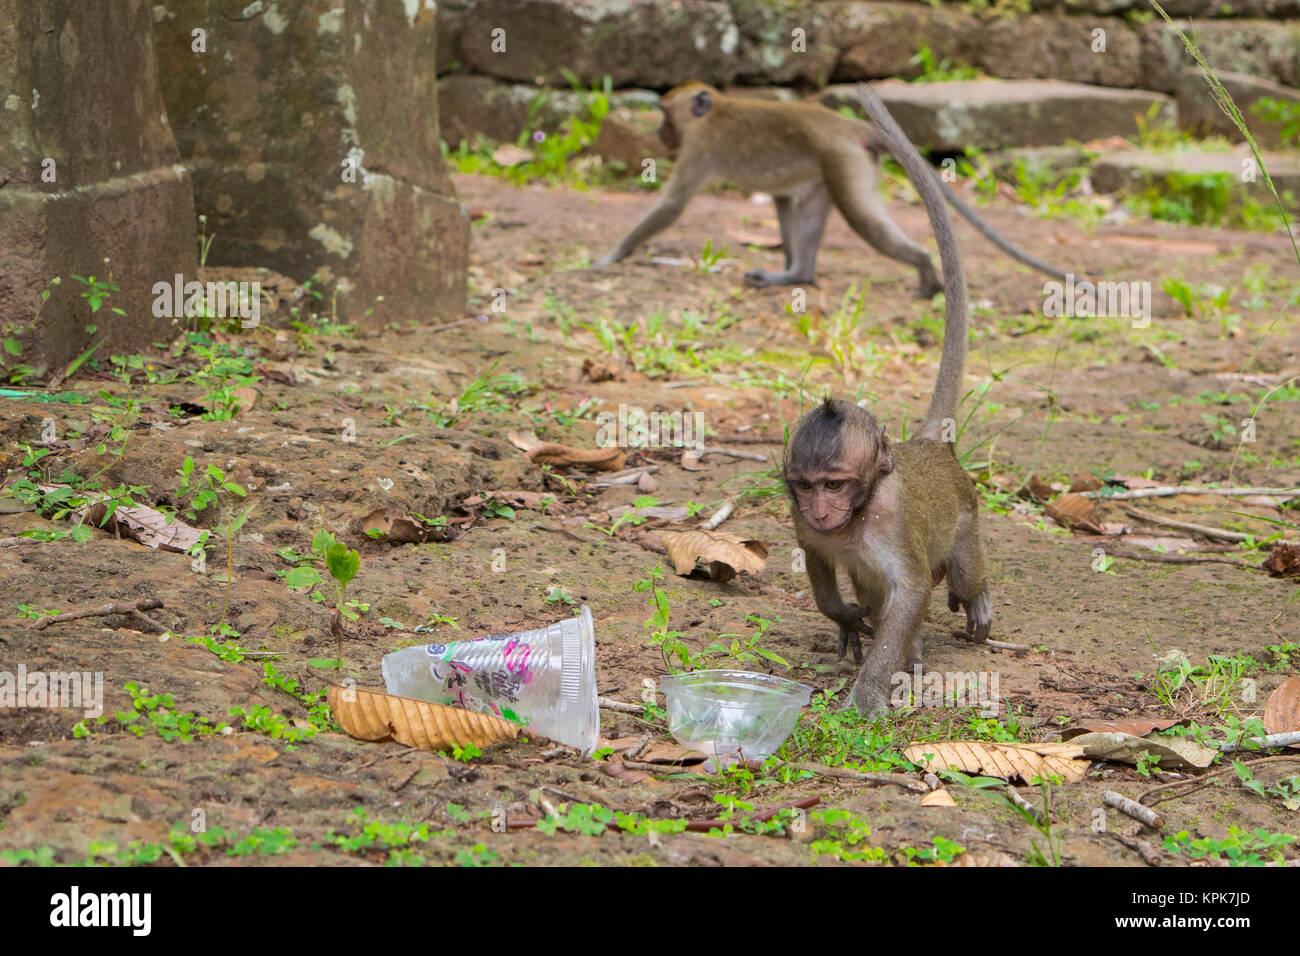 Un bébé curieux singe macaque la marche et à l'alimentation, l'étude d'une tasse en plastique vide, gauche trash par les touristes. Le Cambodge, l'Asie du Sud Est. Banque D'Images